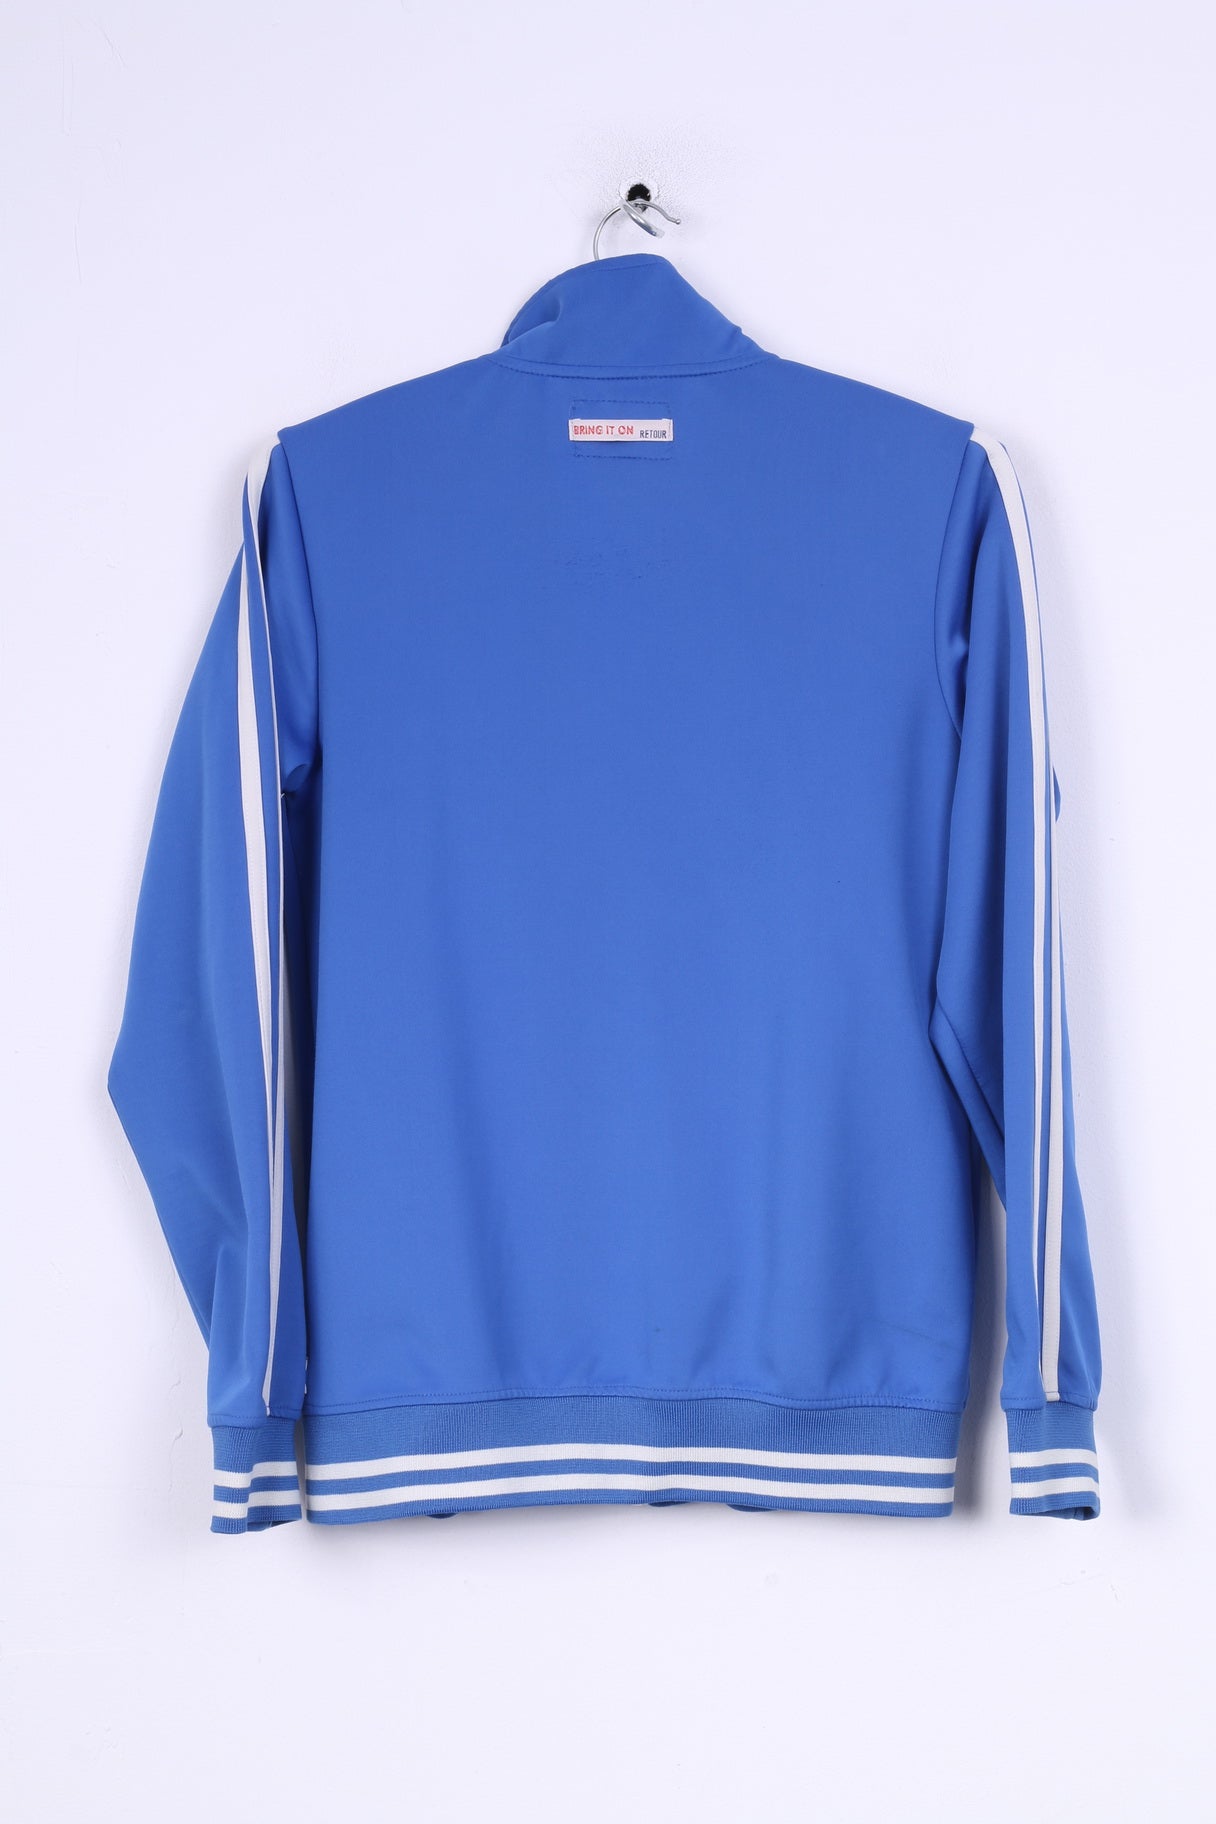 Retour Denim De Luxe Womens 14 XL Sweatshirt Full Zipper Bleu Clair Superheroes Sport 